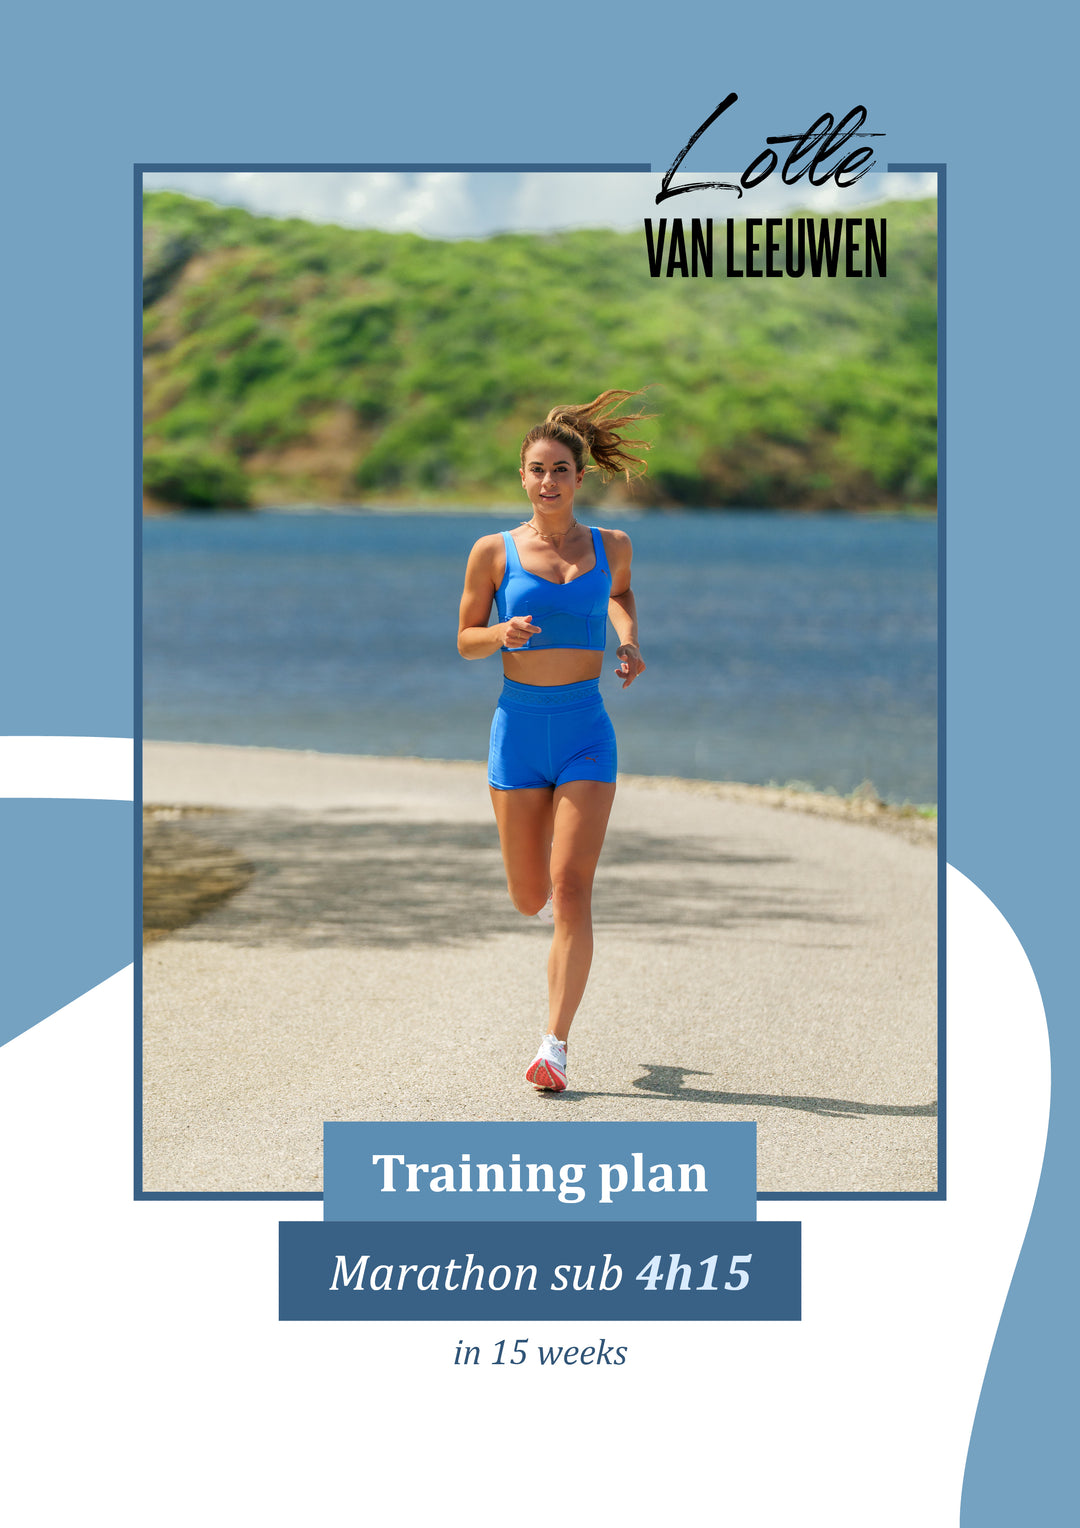 Trainingsschema –  Marathon binnen 4u15